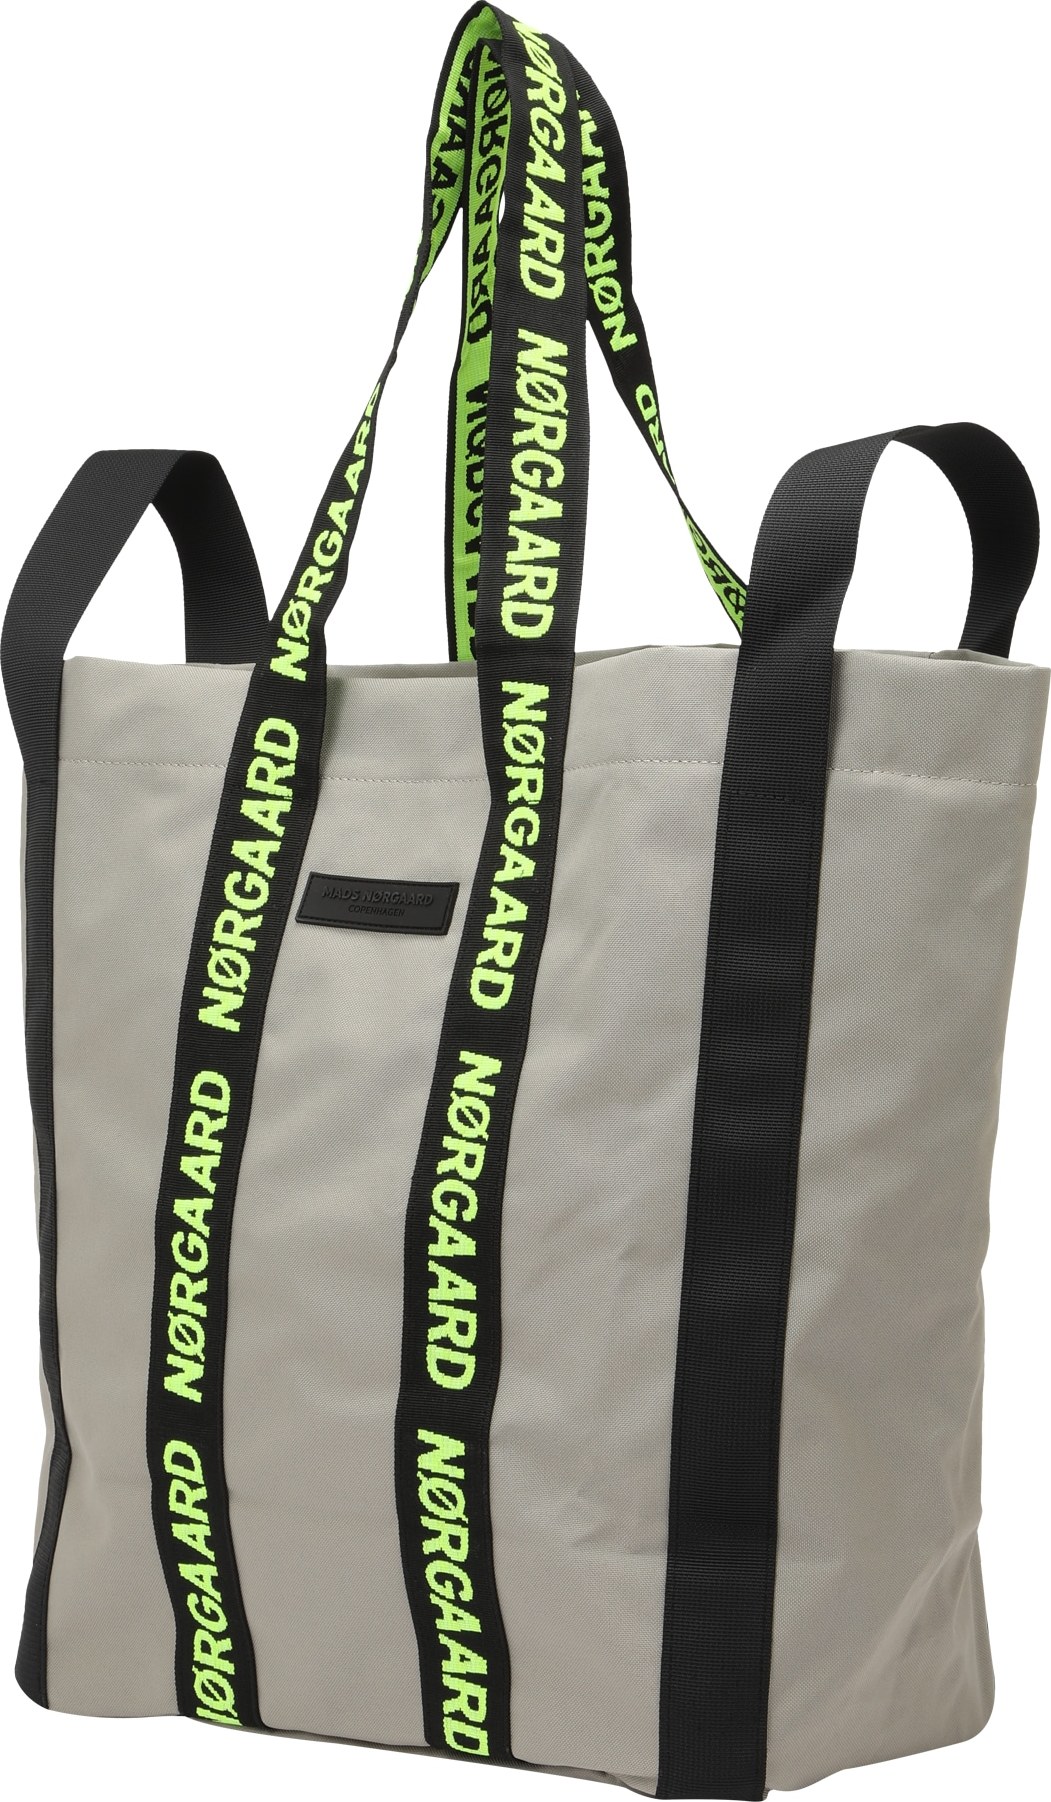 MADS NORGAARD COPENHAGEN Nákupní taška 'Bel One' černá / světle šedá / svítivě zelená